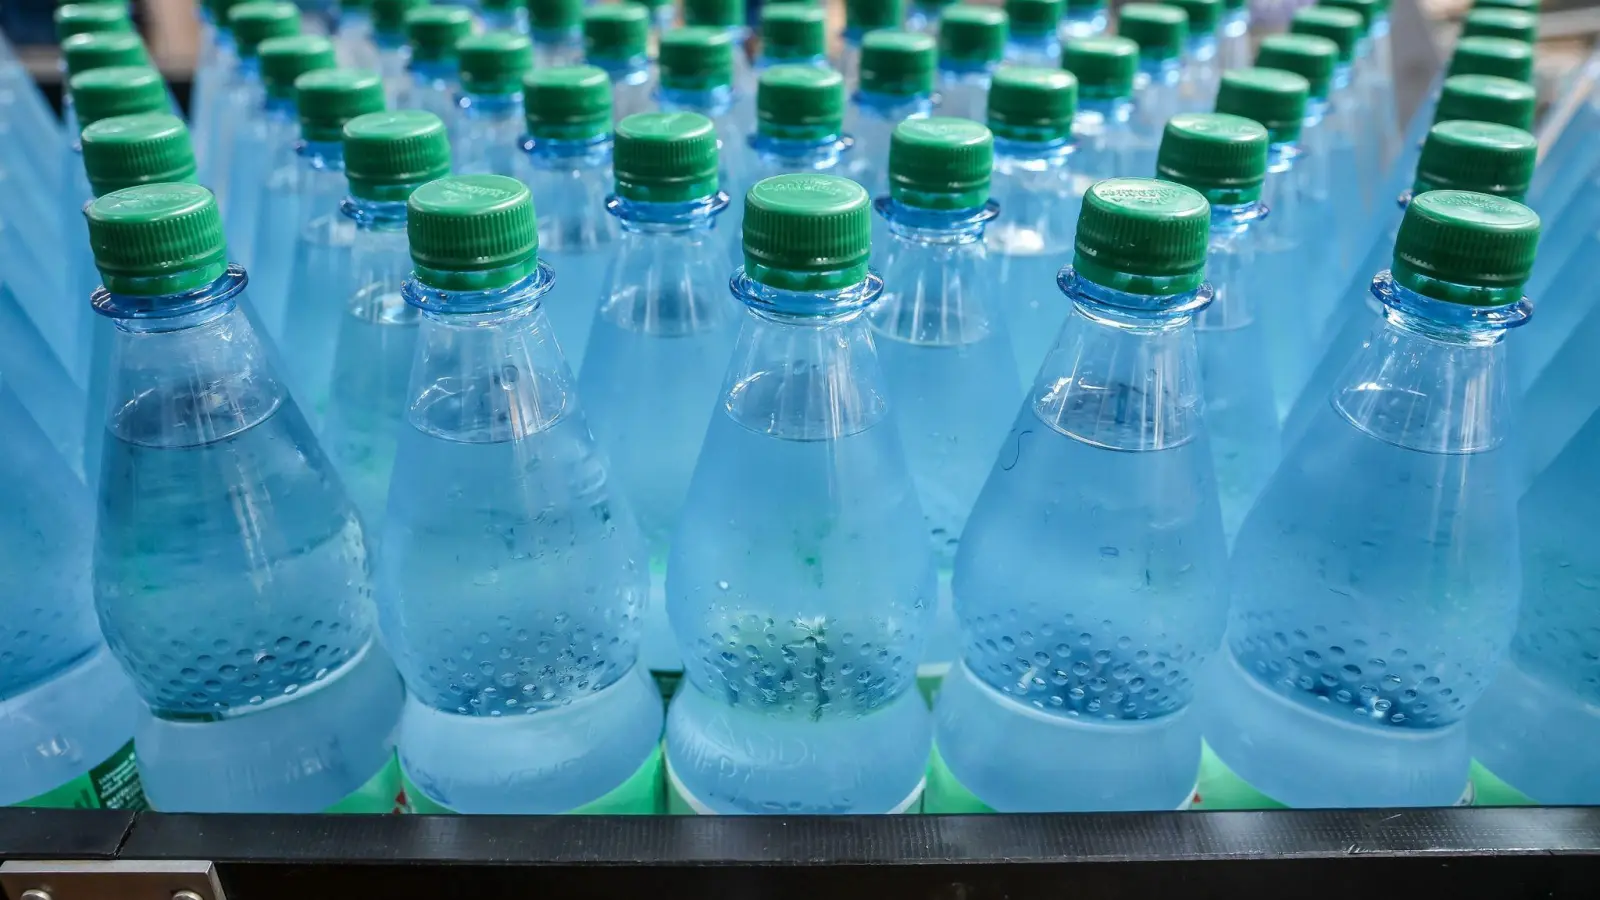 Trotz aufgedrucktem Mindesthaltbarkeitsdatum sind ungeöffnete Wasserflaschen fast unbegrenzt haltbar. Angebrochene Flaschen sollten dagegen kühl lagern und schnell aufgebraucht werden. (Foto: Jan Woitas/dpa/dpa-tmn)